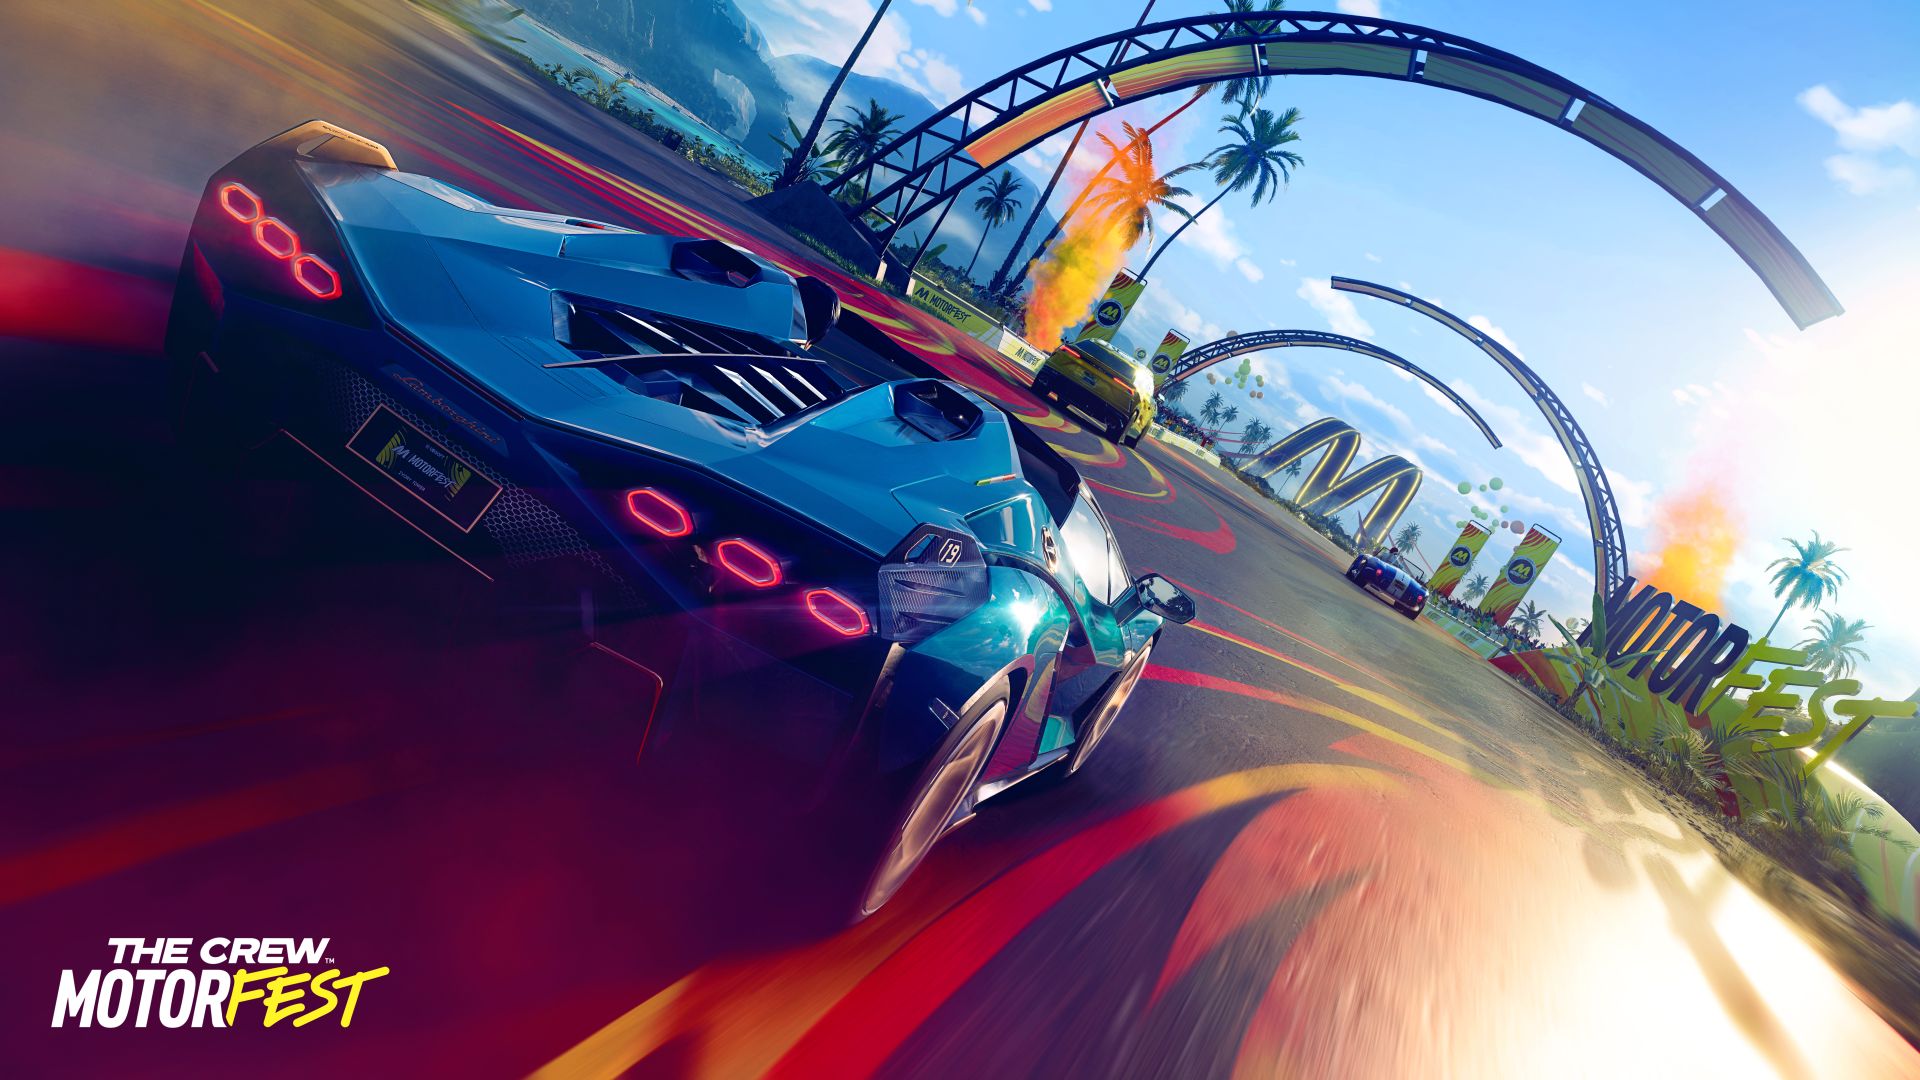 Ubisoft bevestigt releasedatum The Crew Motorfest - de avonturenrace verschijnt op 14 september